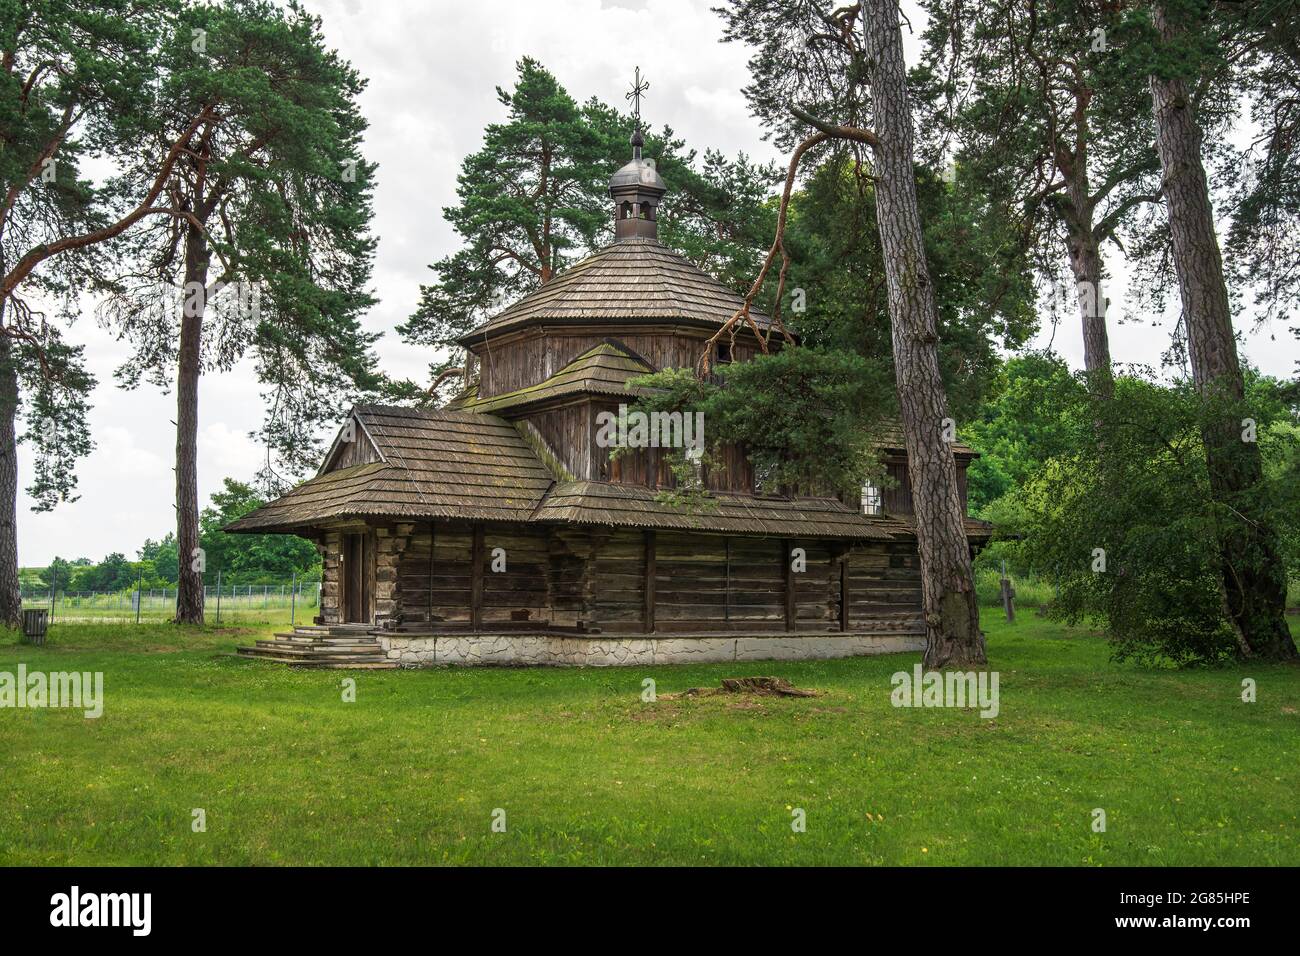 Église catholique grecque en bois de Saint-Bazyli à Belzec, construit en 1756, située sur un ancien cimetière, entourée de vieux arbres. Belzec, Roztocze, Pologne Banque D'Images